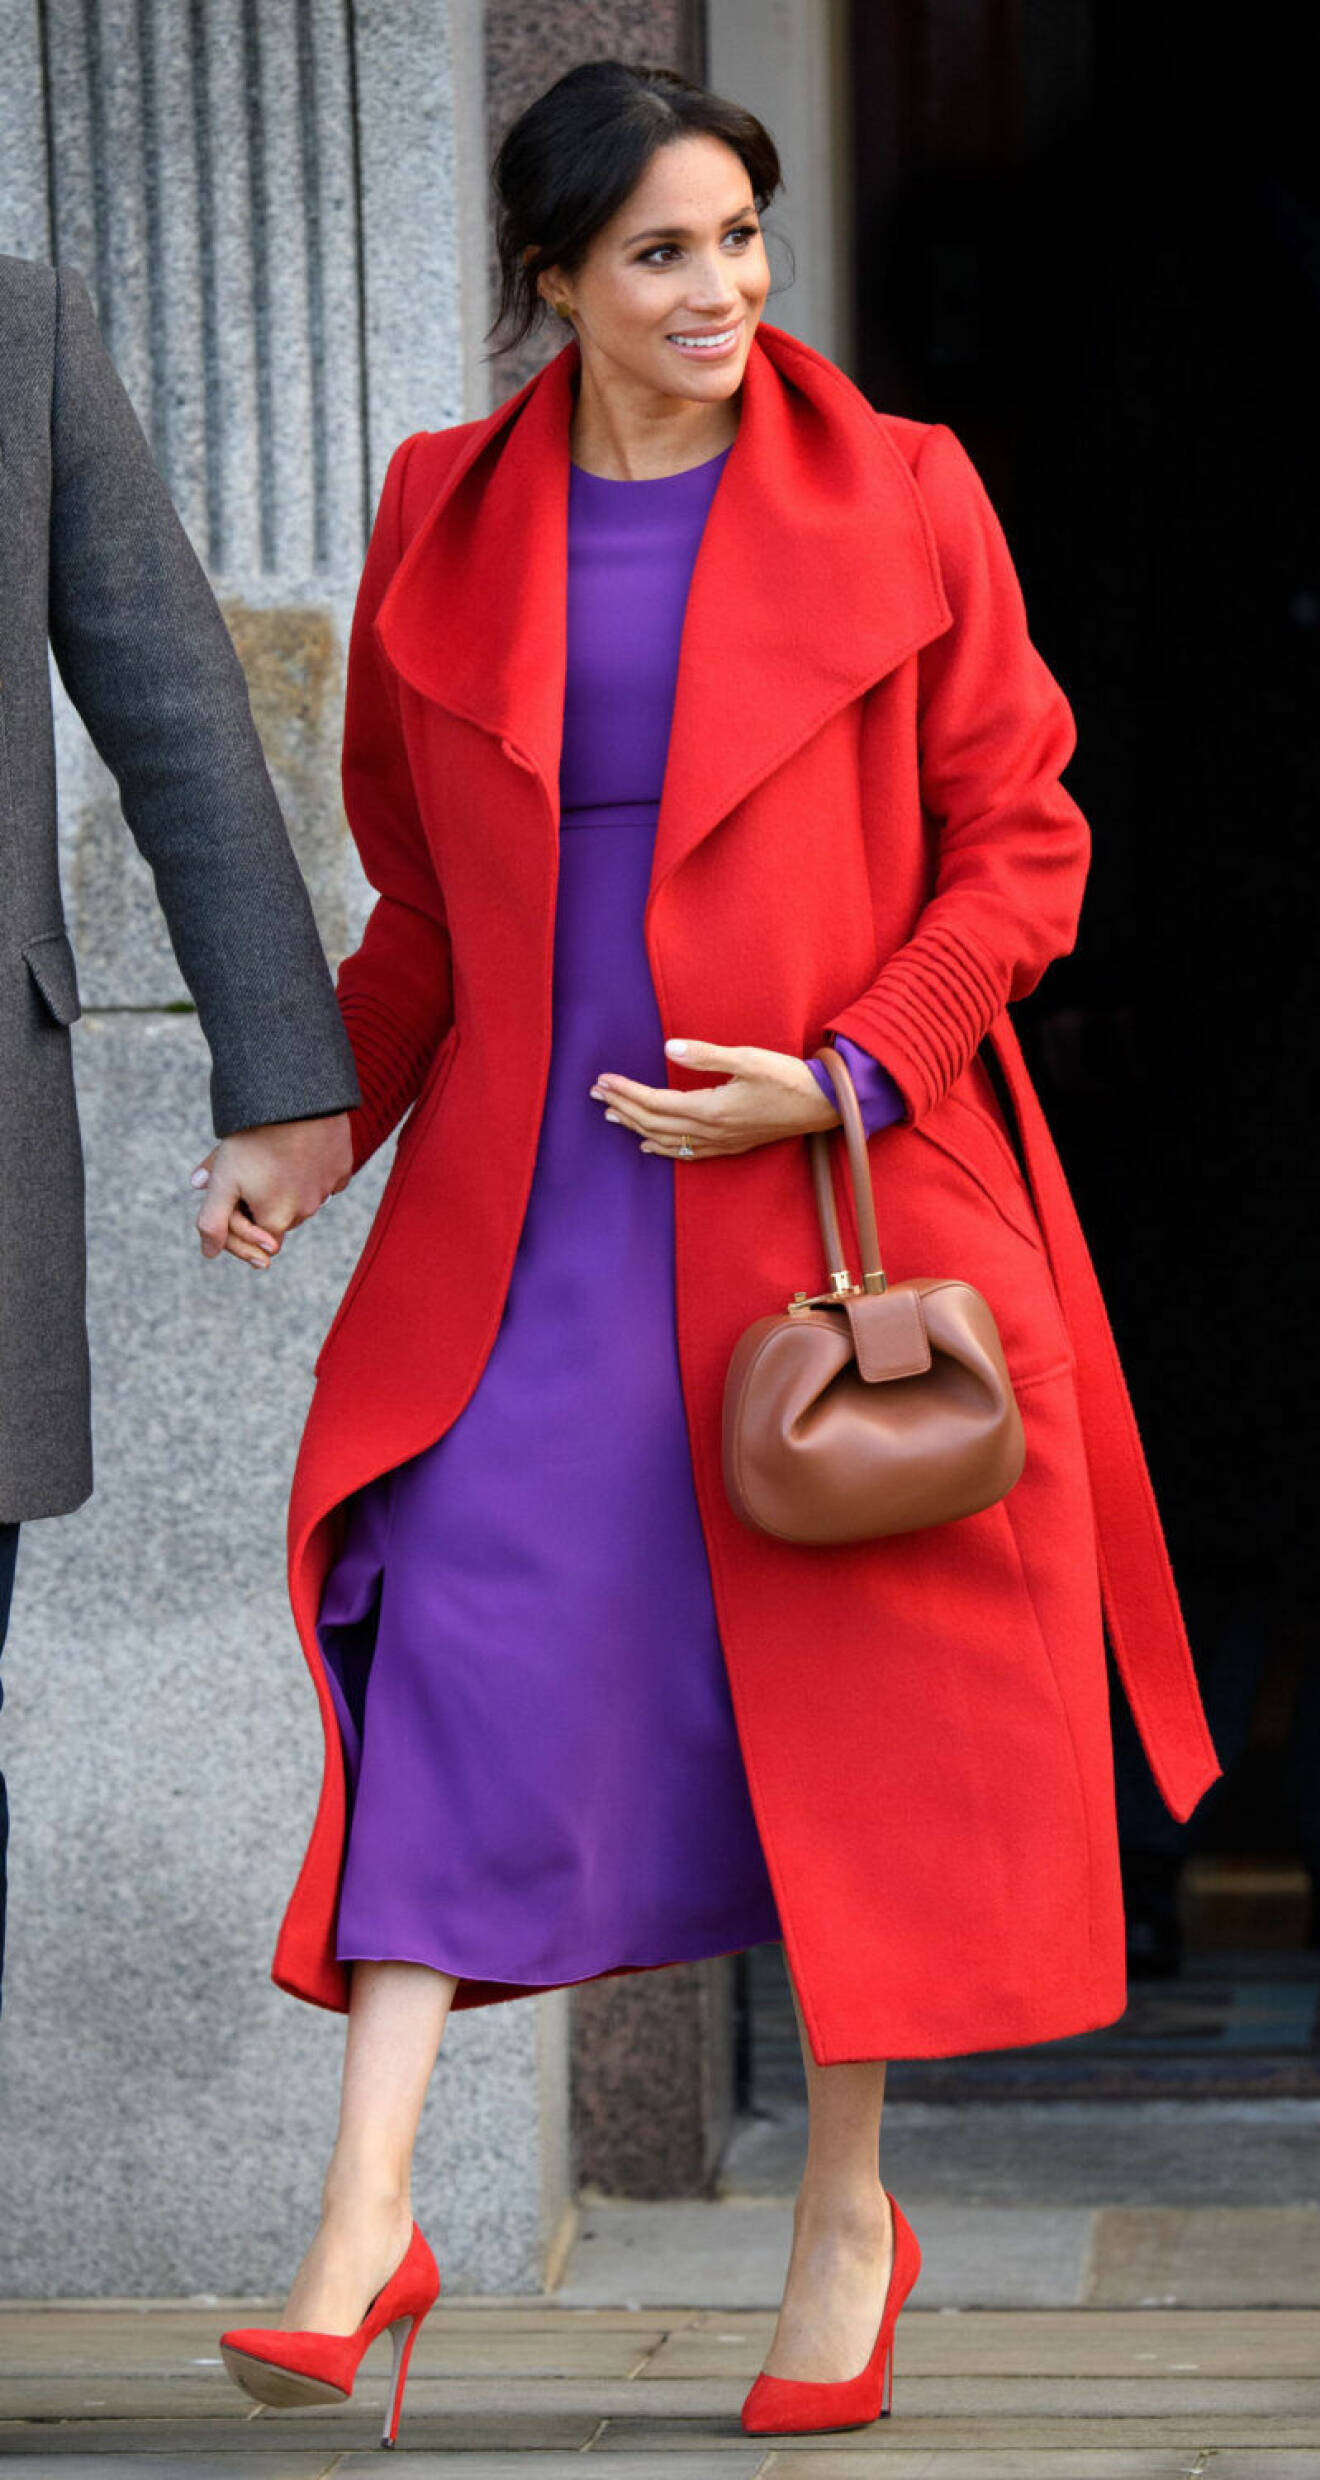 Meghan Markle i lila klänning och röd kappa